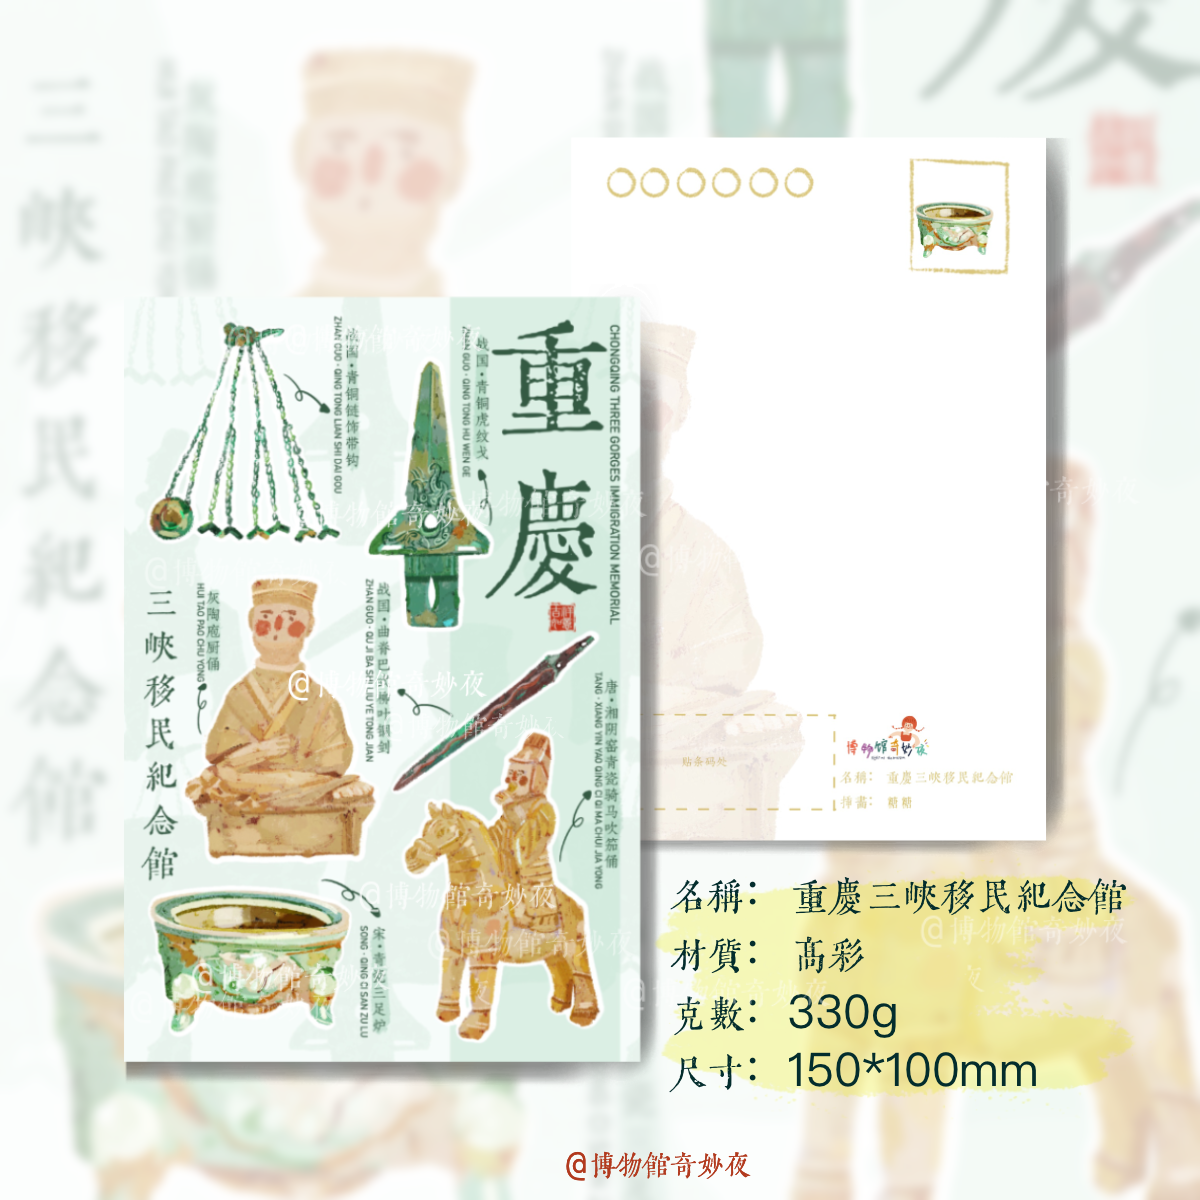 【博物馆系列】重庆三峡移民纪念馆手绘明信片卡片